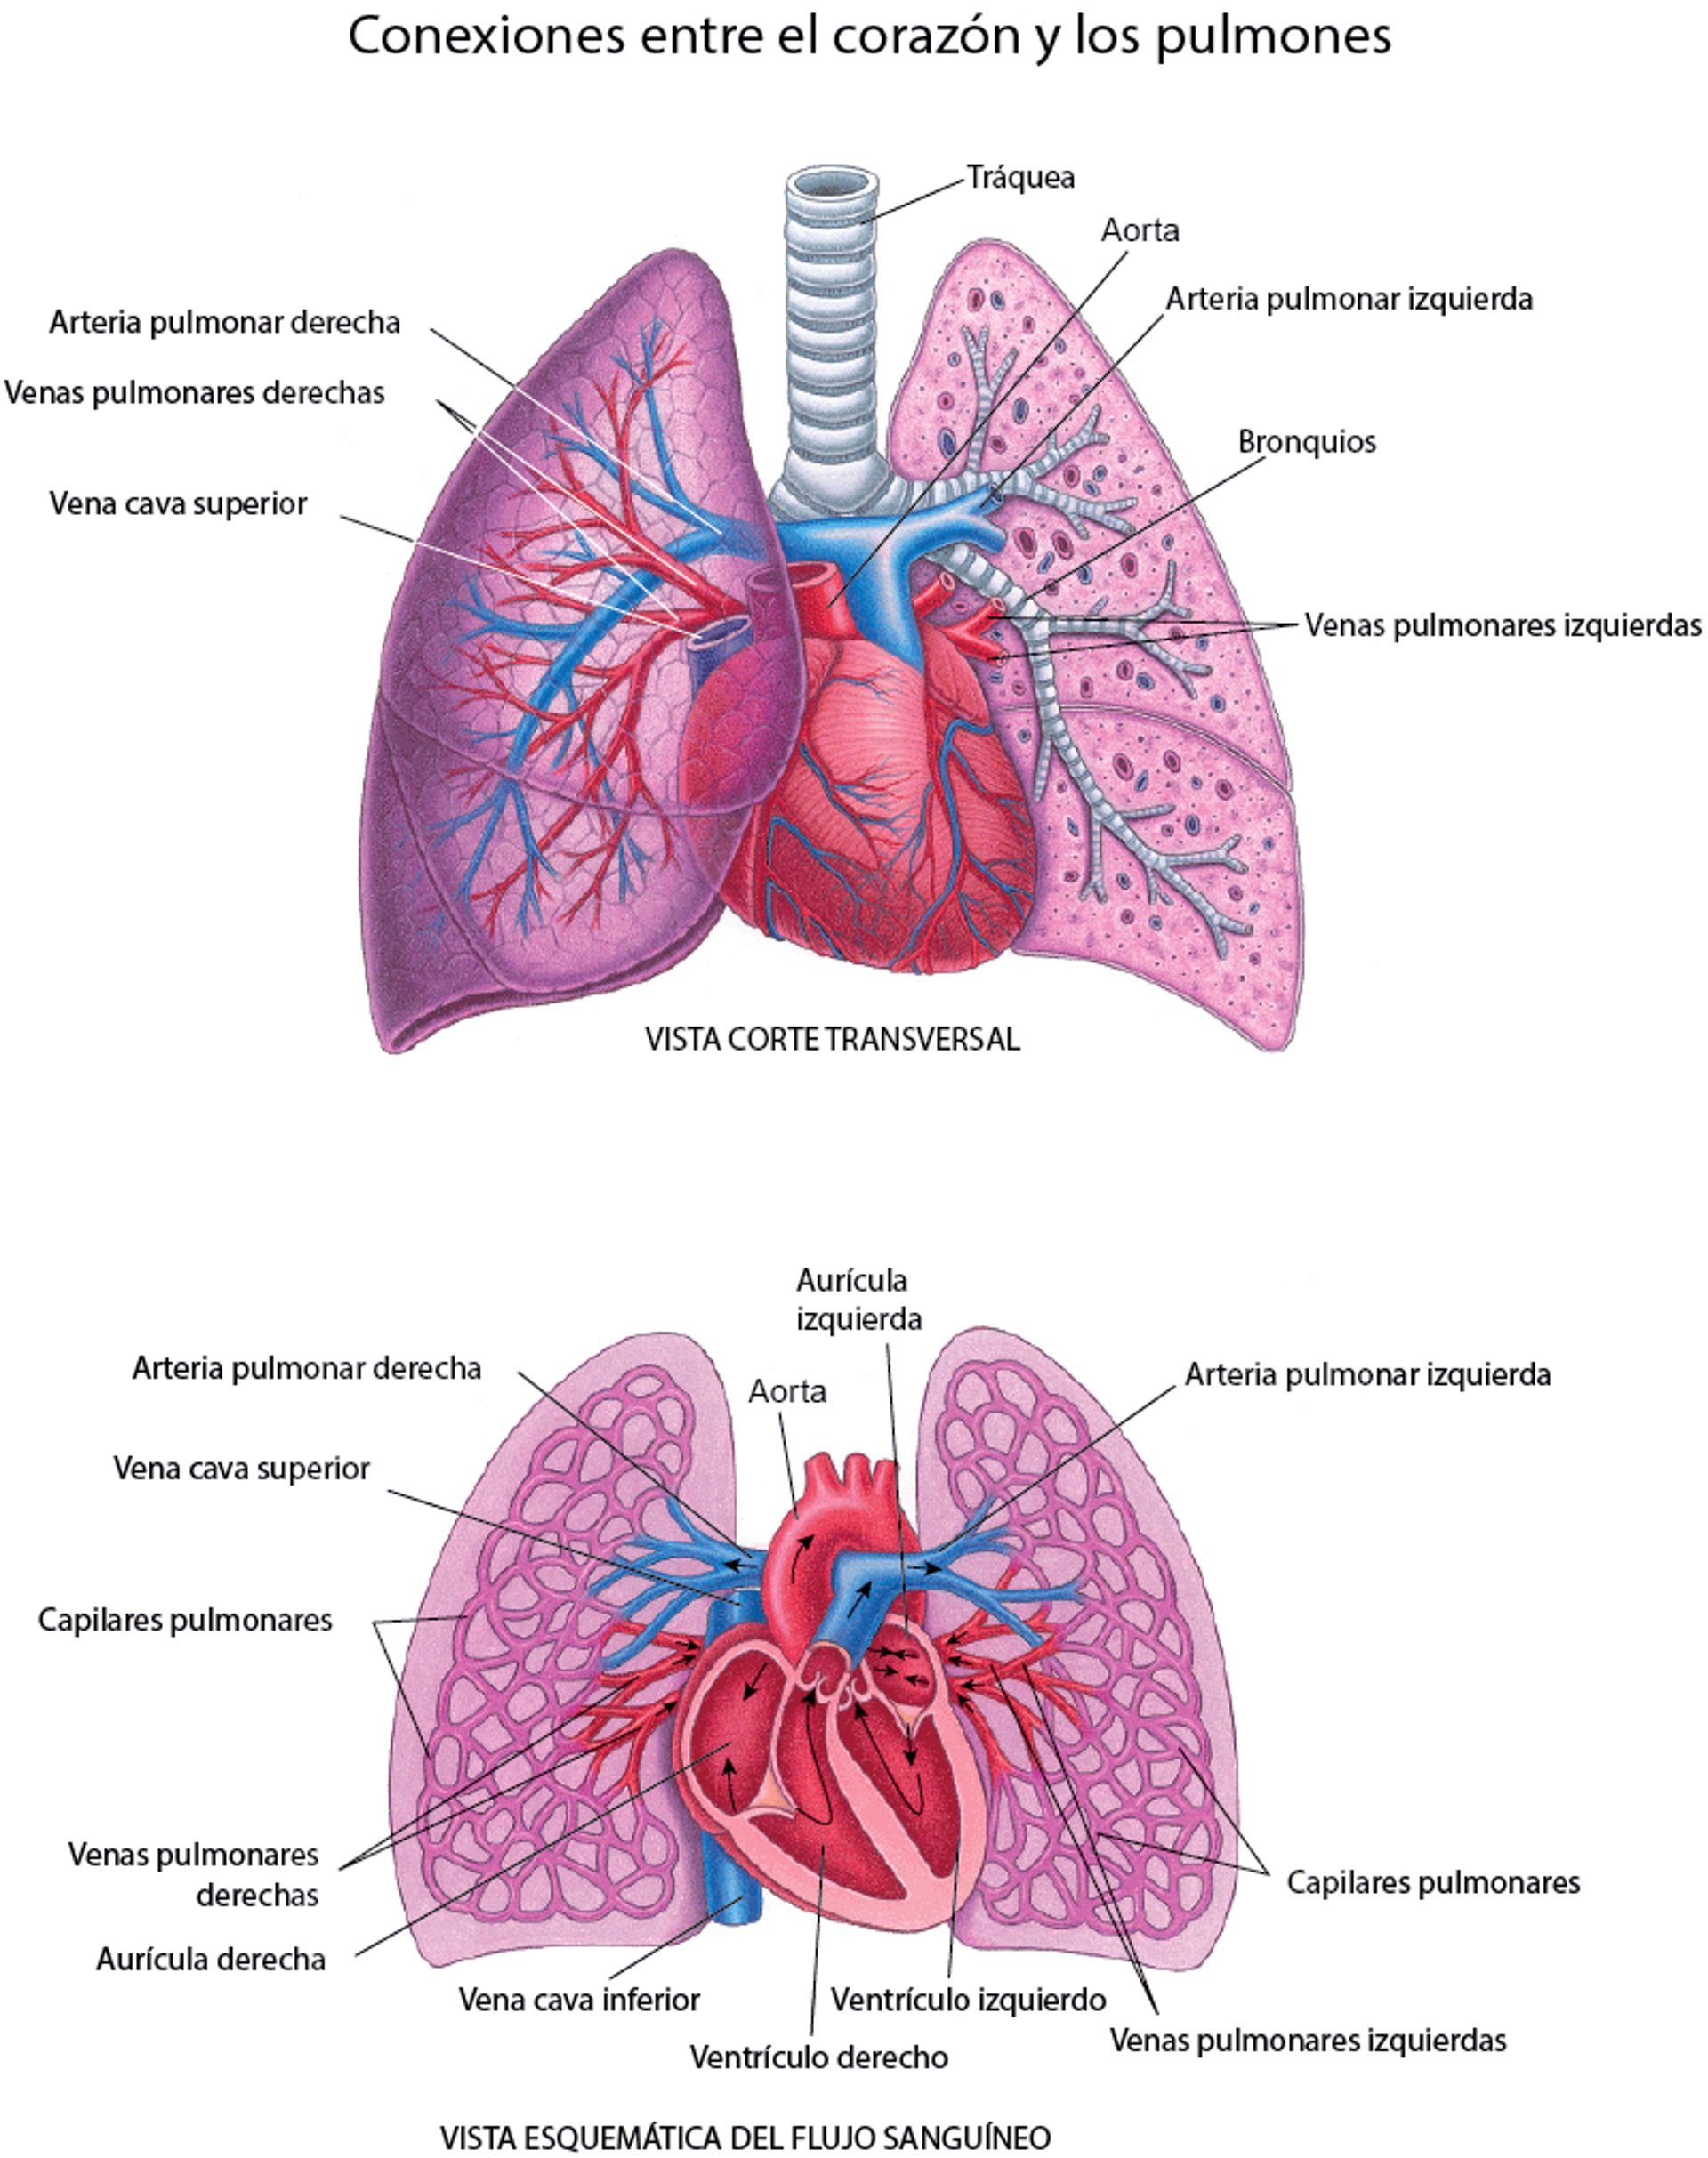 Conexiones entre el corazón y los pulmones